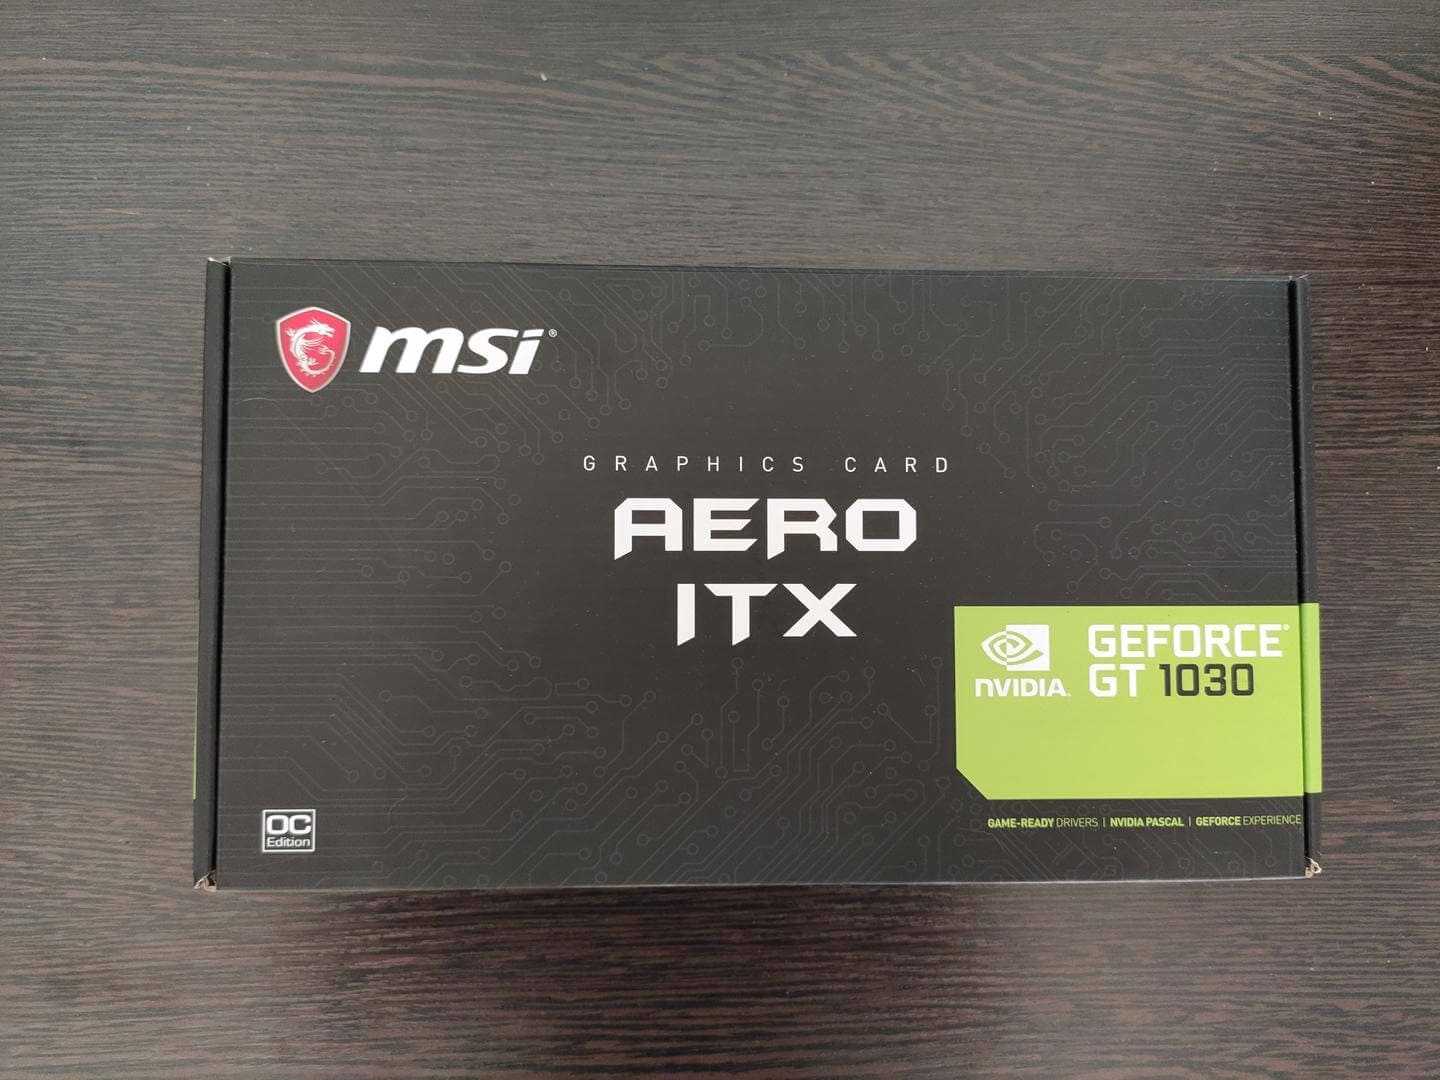 MSI GeForce GT 1030 - короткий но максимально информативный обзор Для большего удобства добавлены характеристики отзывы и видео